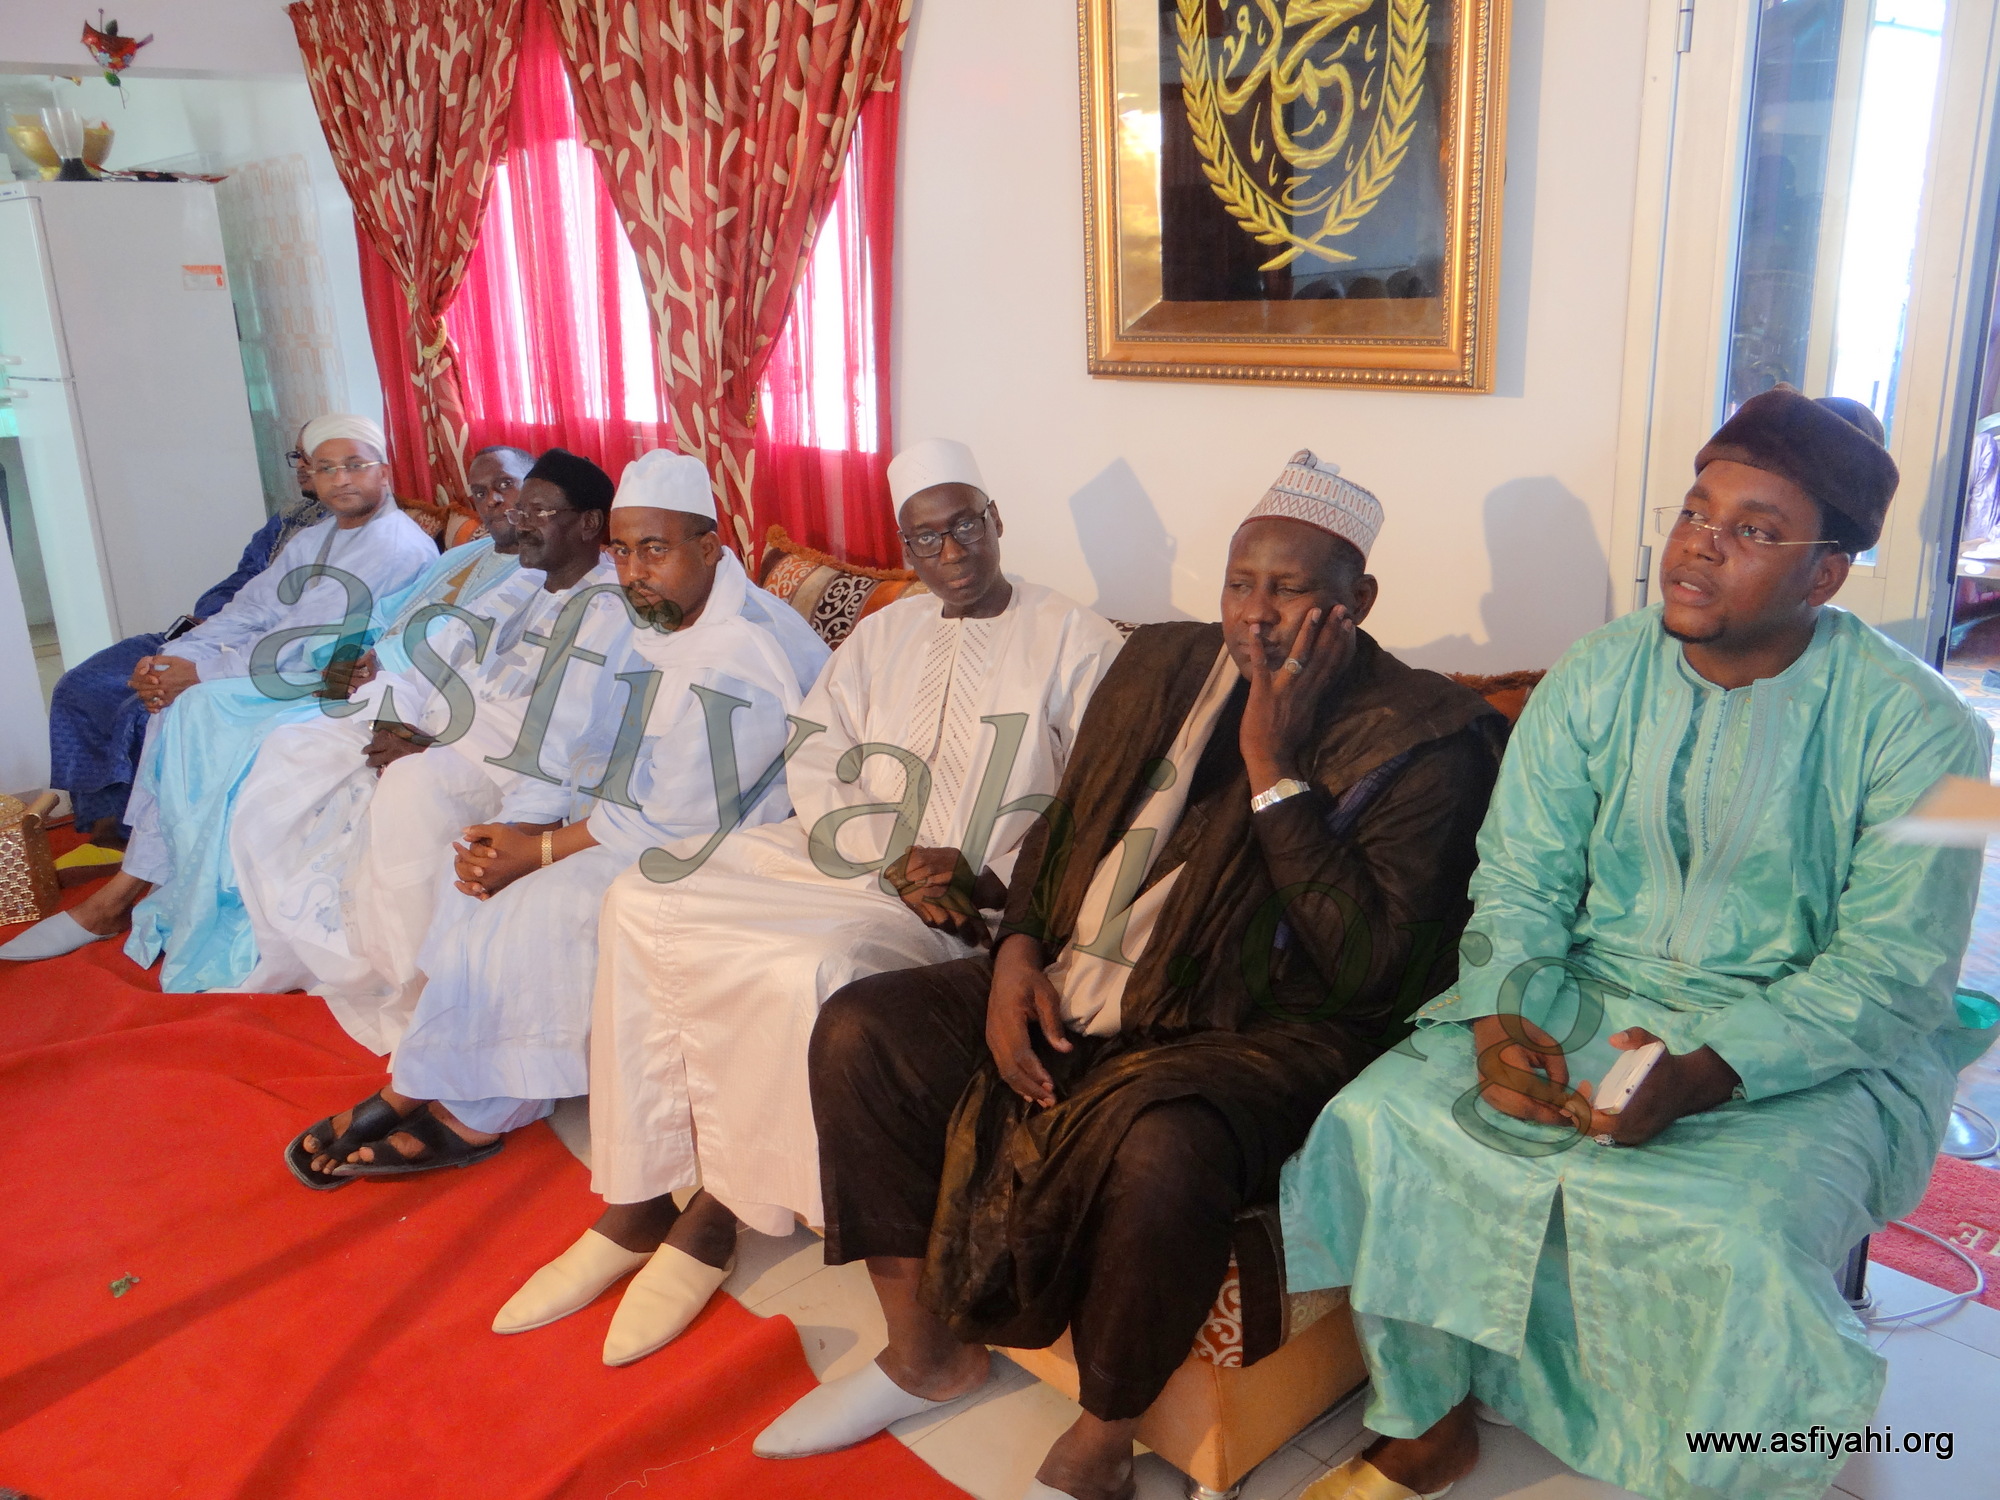 PHOTOS - Les images de la Journée de Prières organisée par Cheikh Oumar Kane et le Miroir de l'islam , Dimanche 5 Juillet 2015